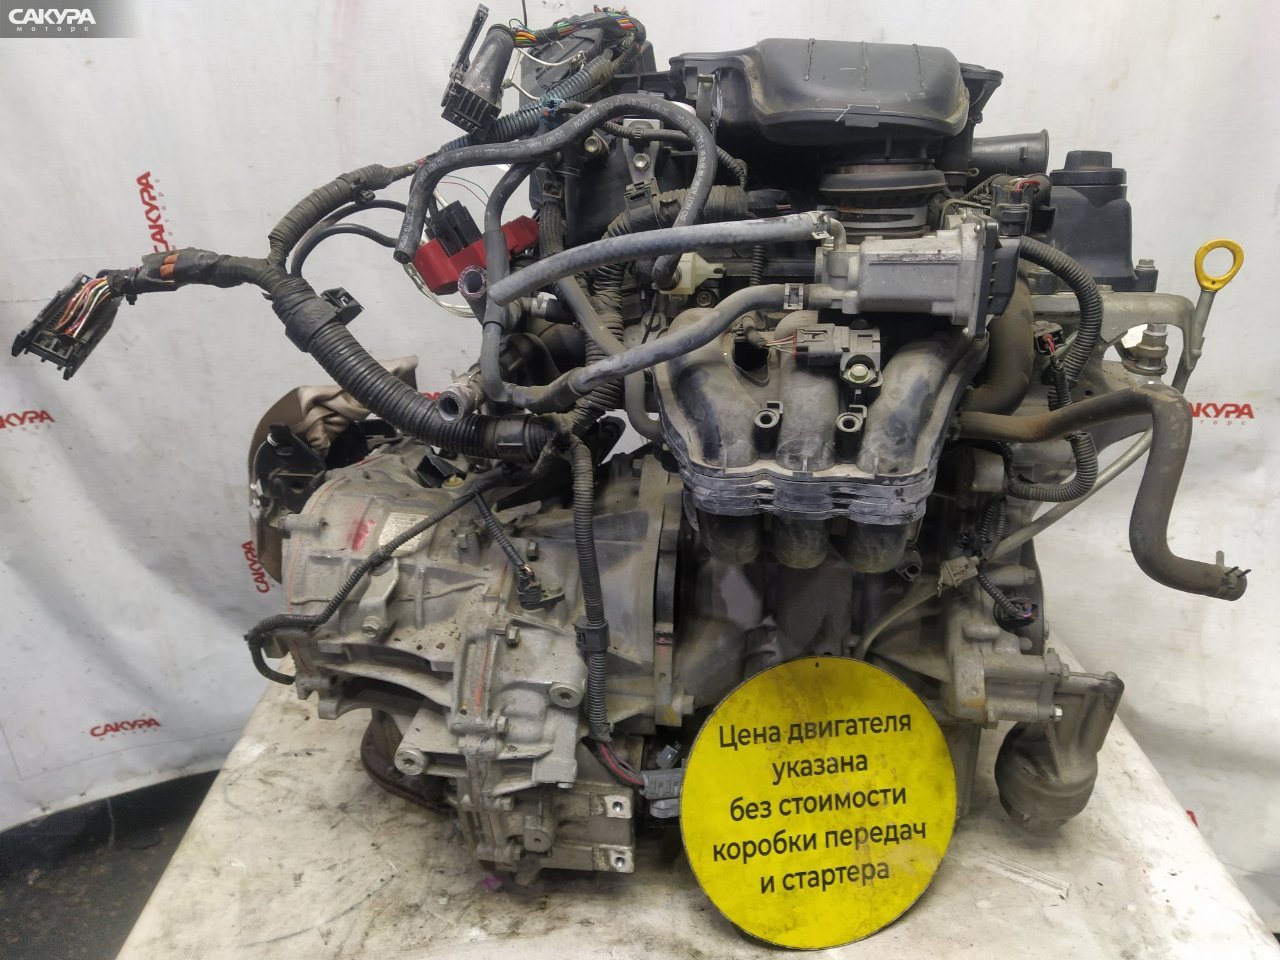 Двигатель Toyota Vitz KSP130 1KR-FE: купить в Сакура Красноярск.